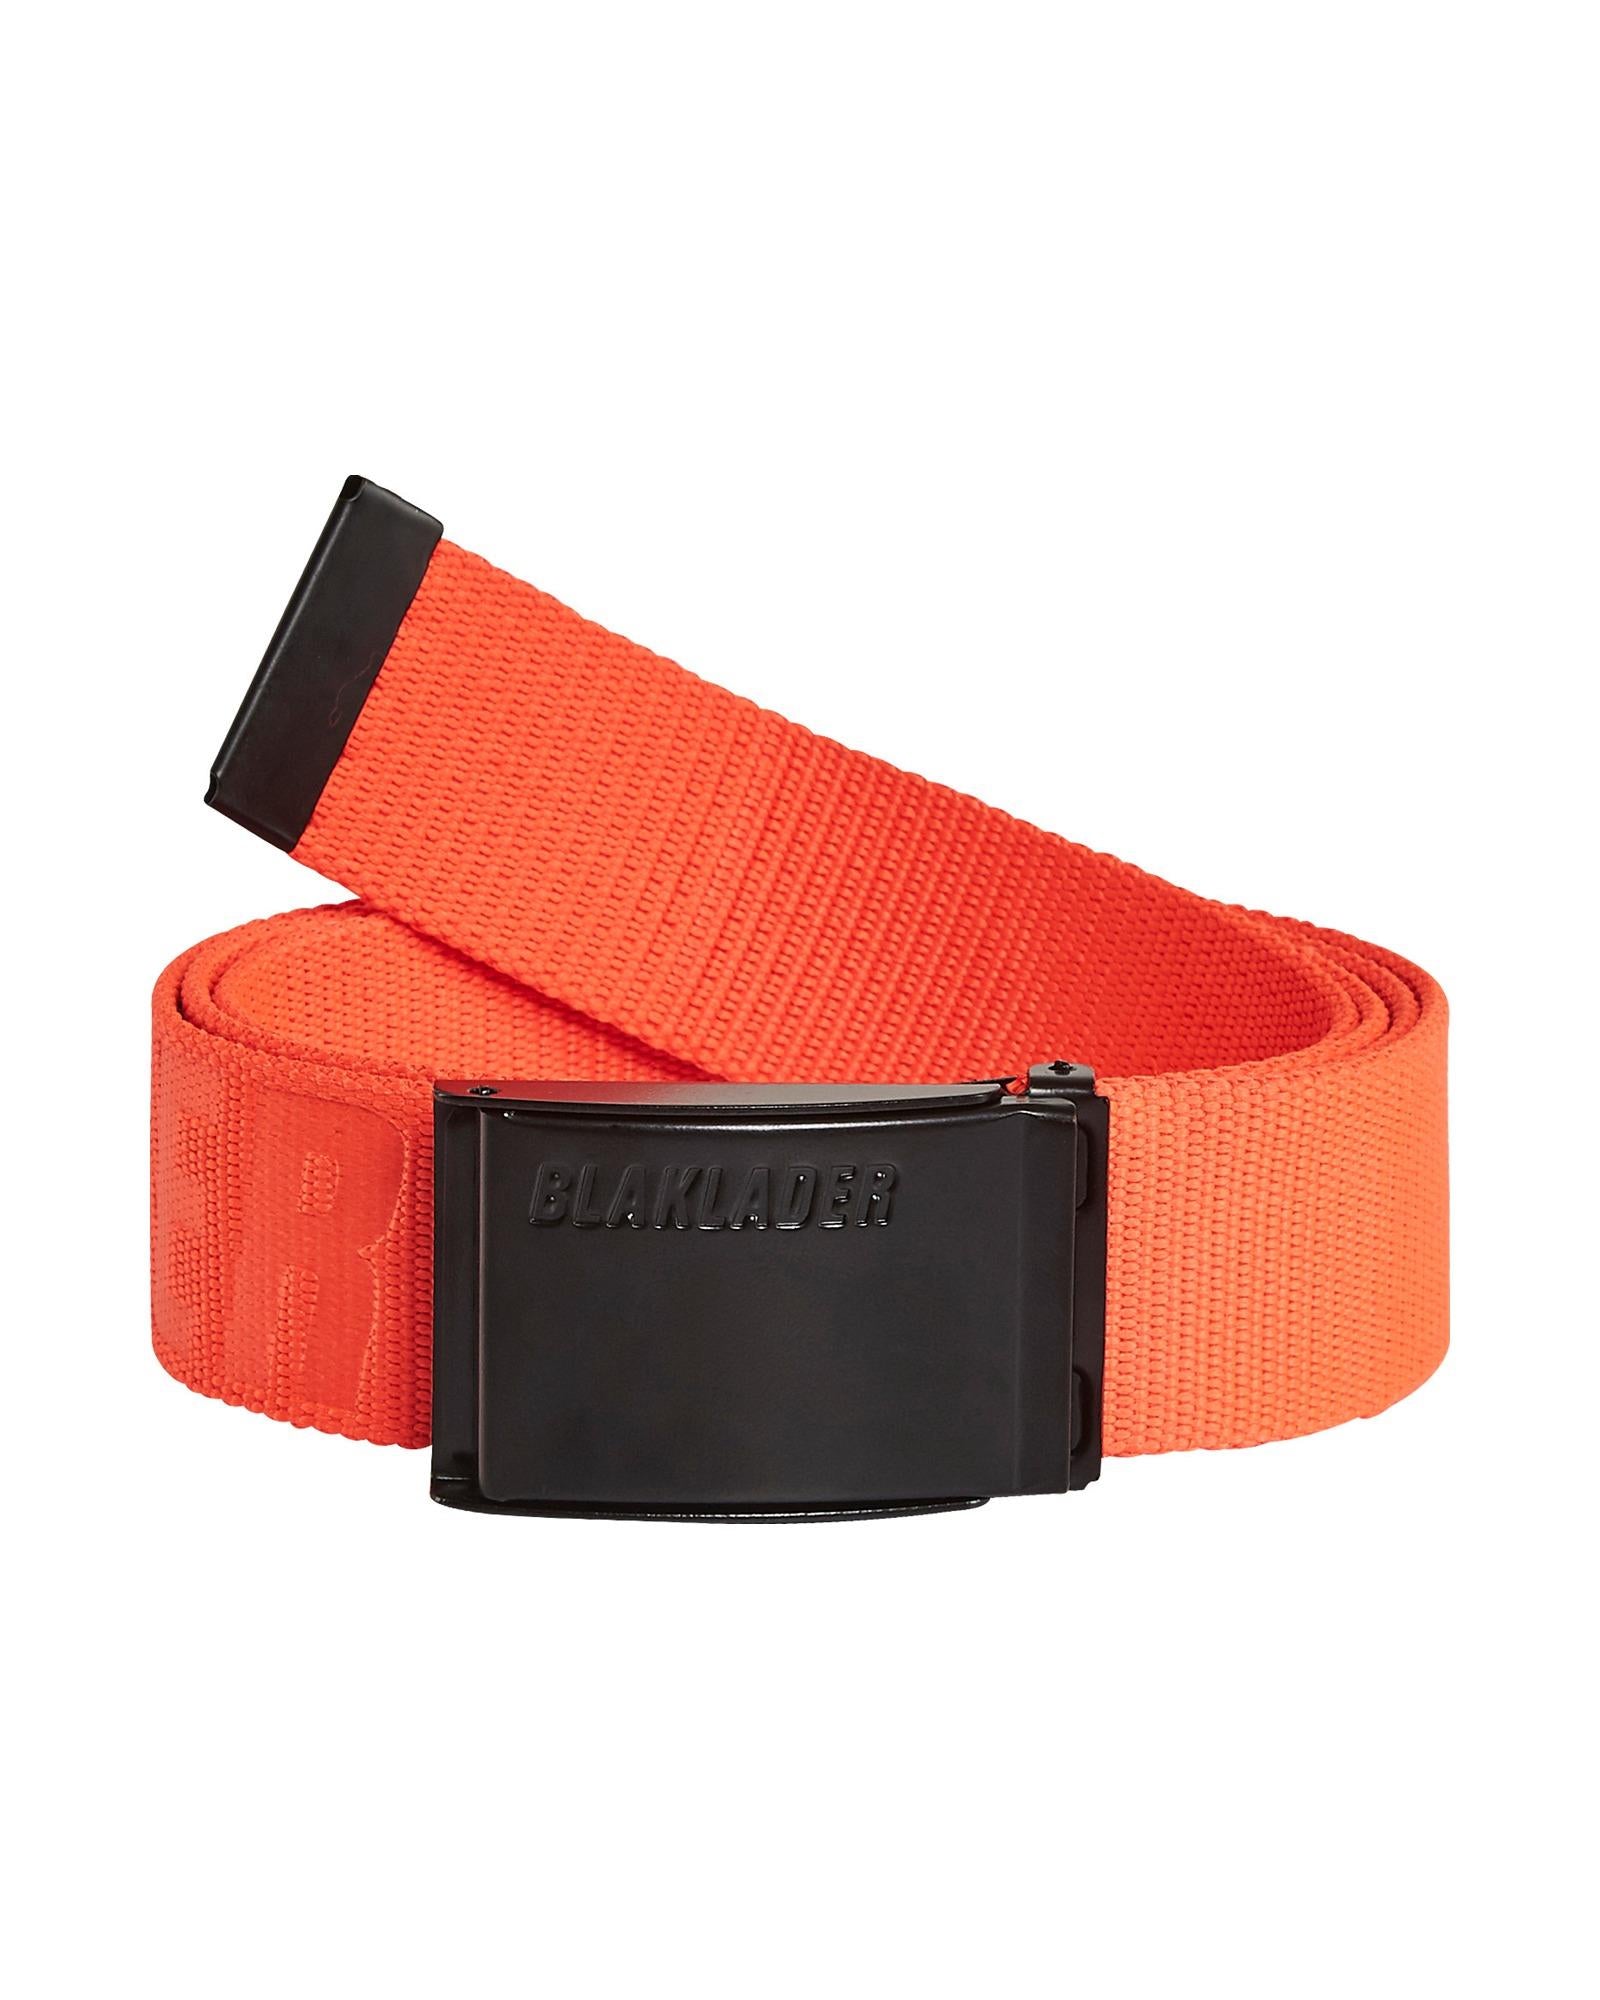 Blaklader fluorescent red textile adjustable belt with metal buckle #4034